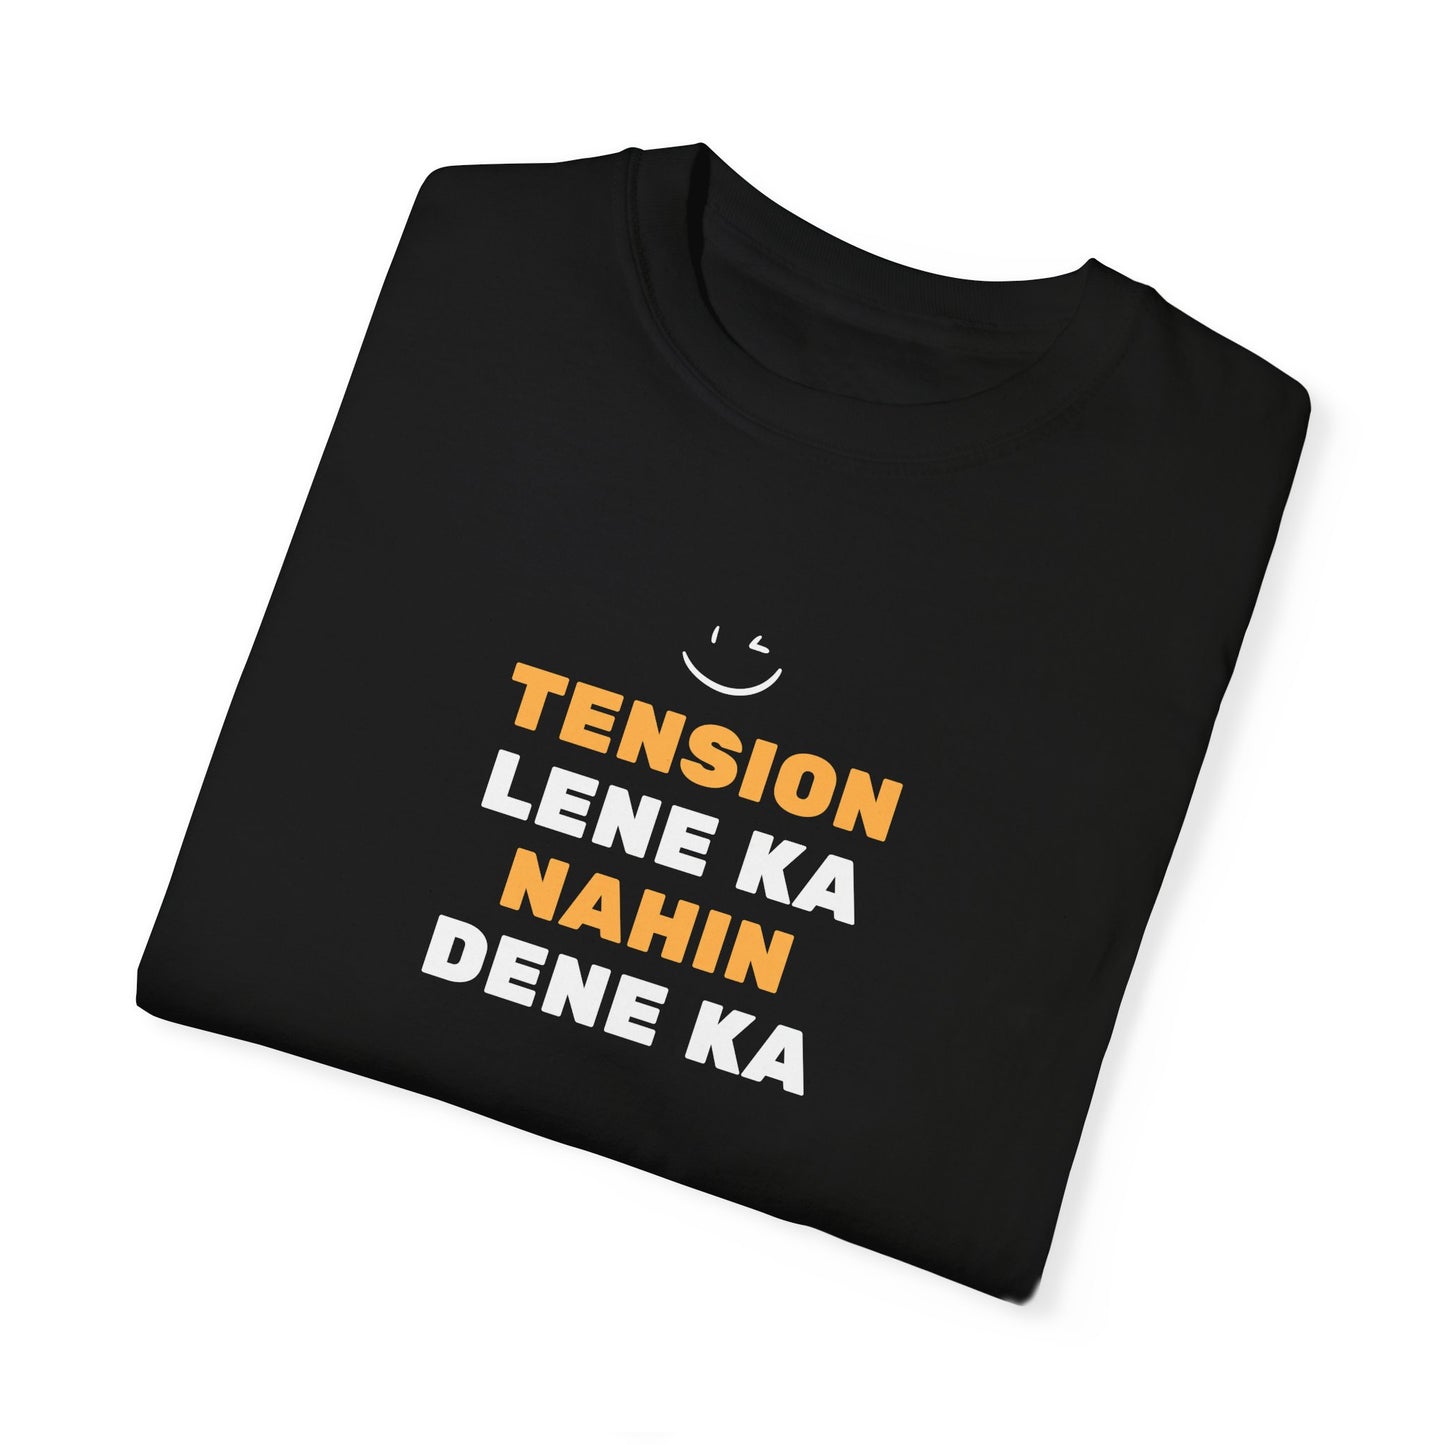 Tension Lene Ka Nahin Dene Ka T-Shirt